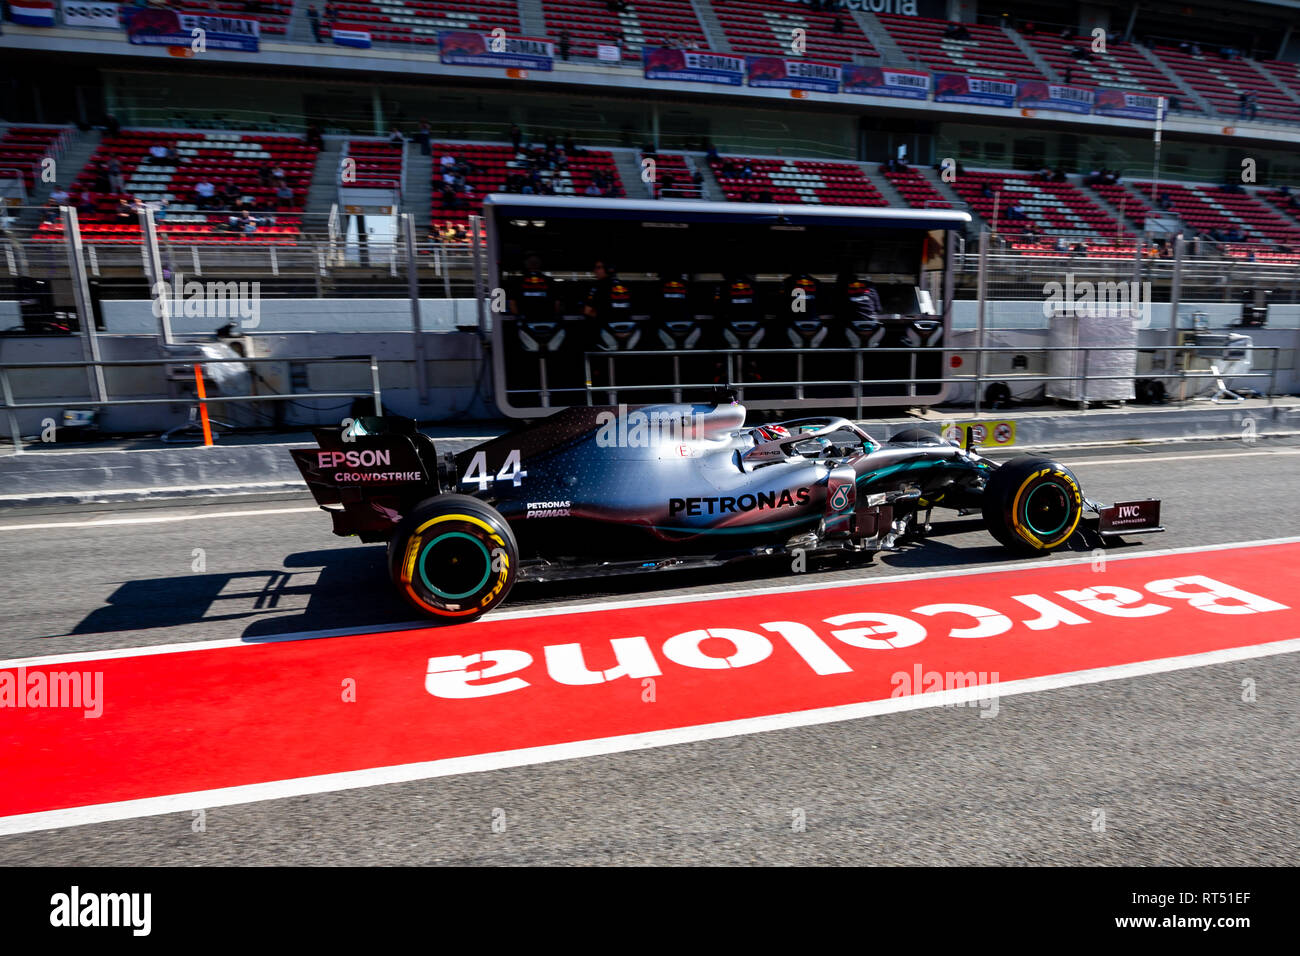 Lewis Hamilton de Mercedes AMG Petronas Formula One team durante el segundo viaje de segunda semana días de pruebas de F1 en el circuito de Montmelo. Foto de stock